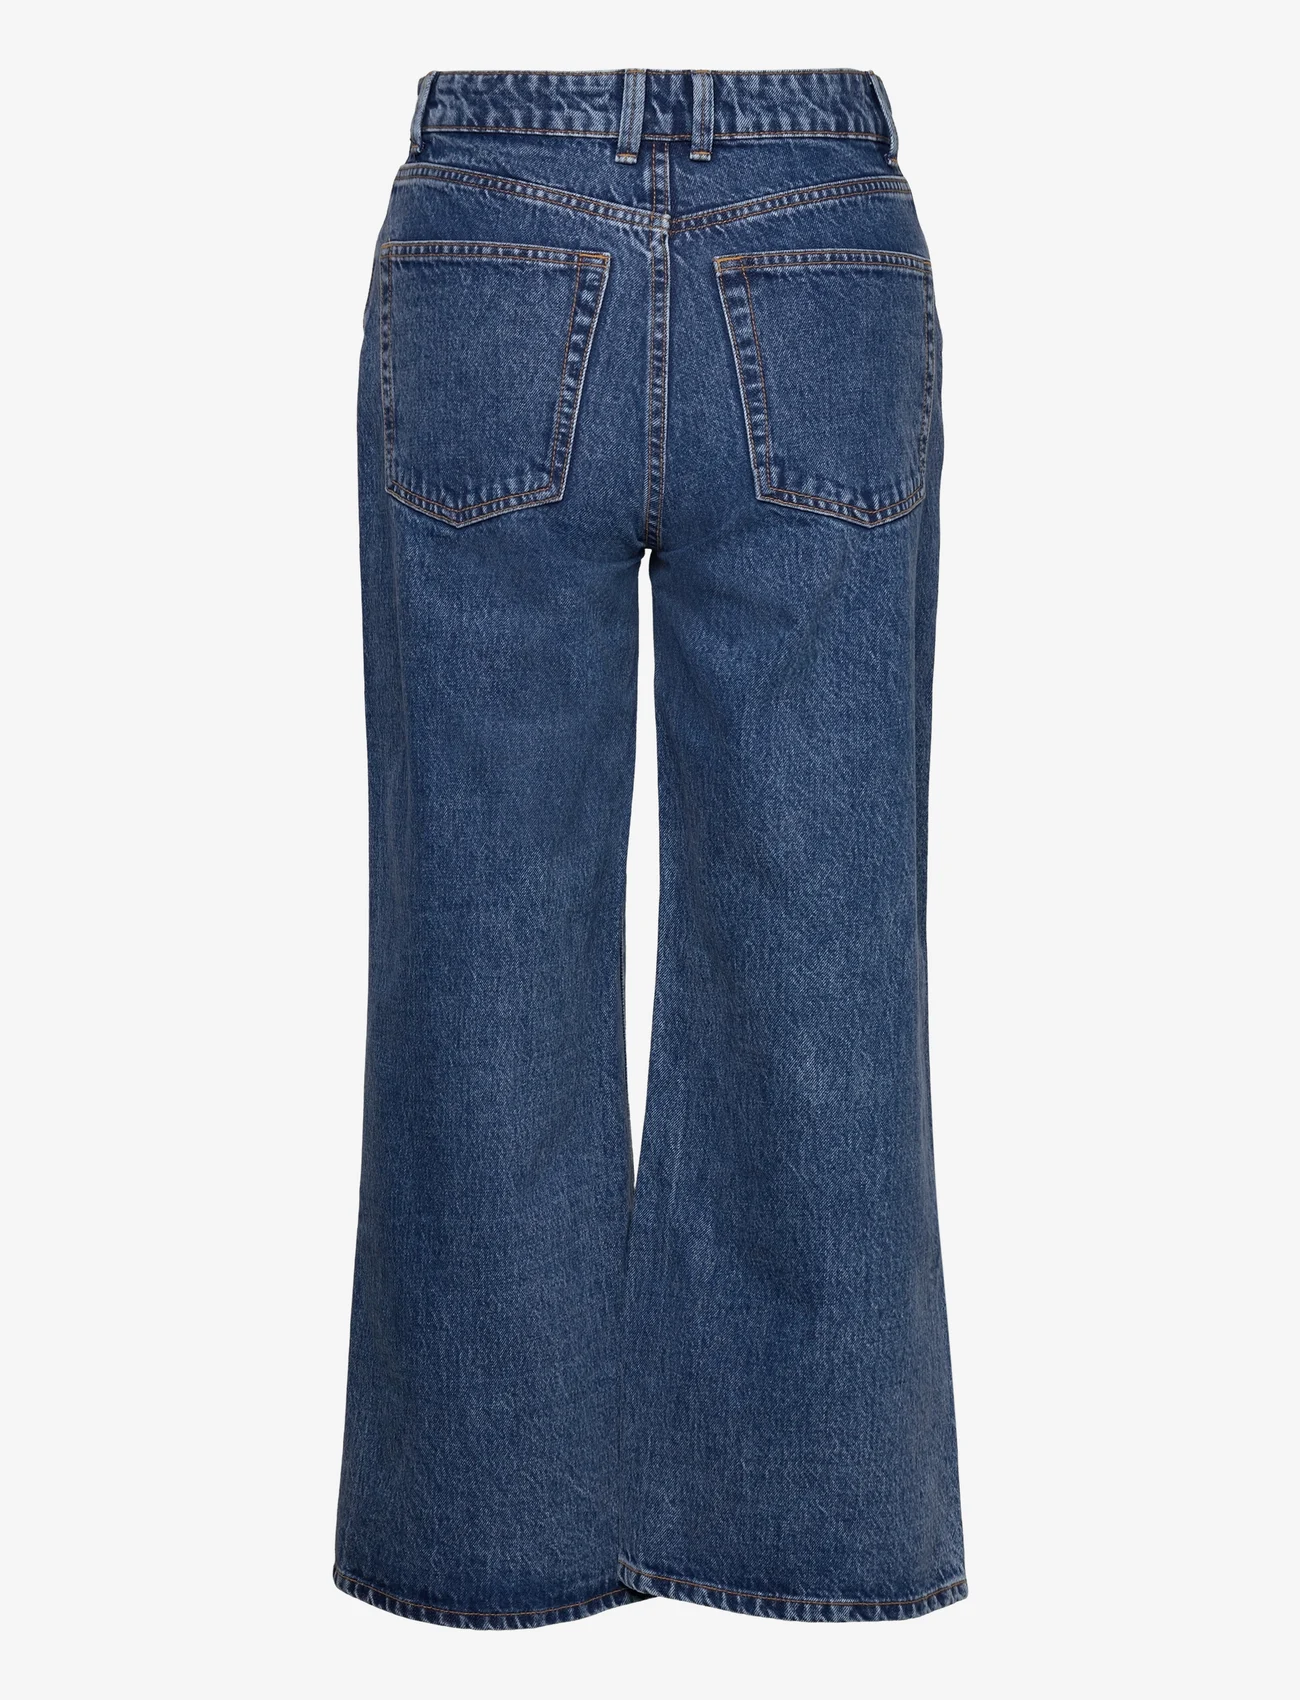 Lindex - Trousers denim Jackie cr retro - vide jeans - denim blue - 1